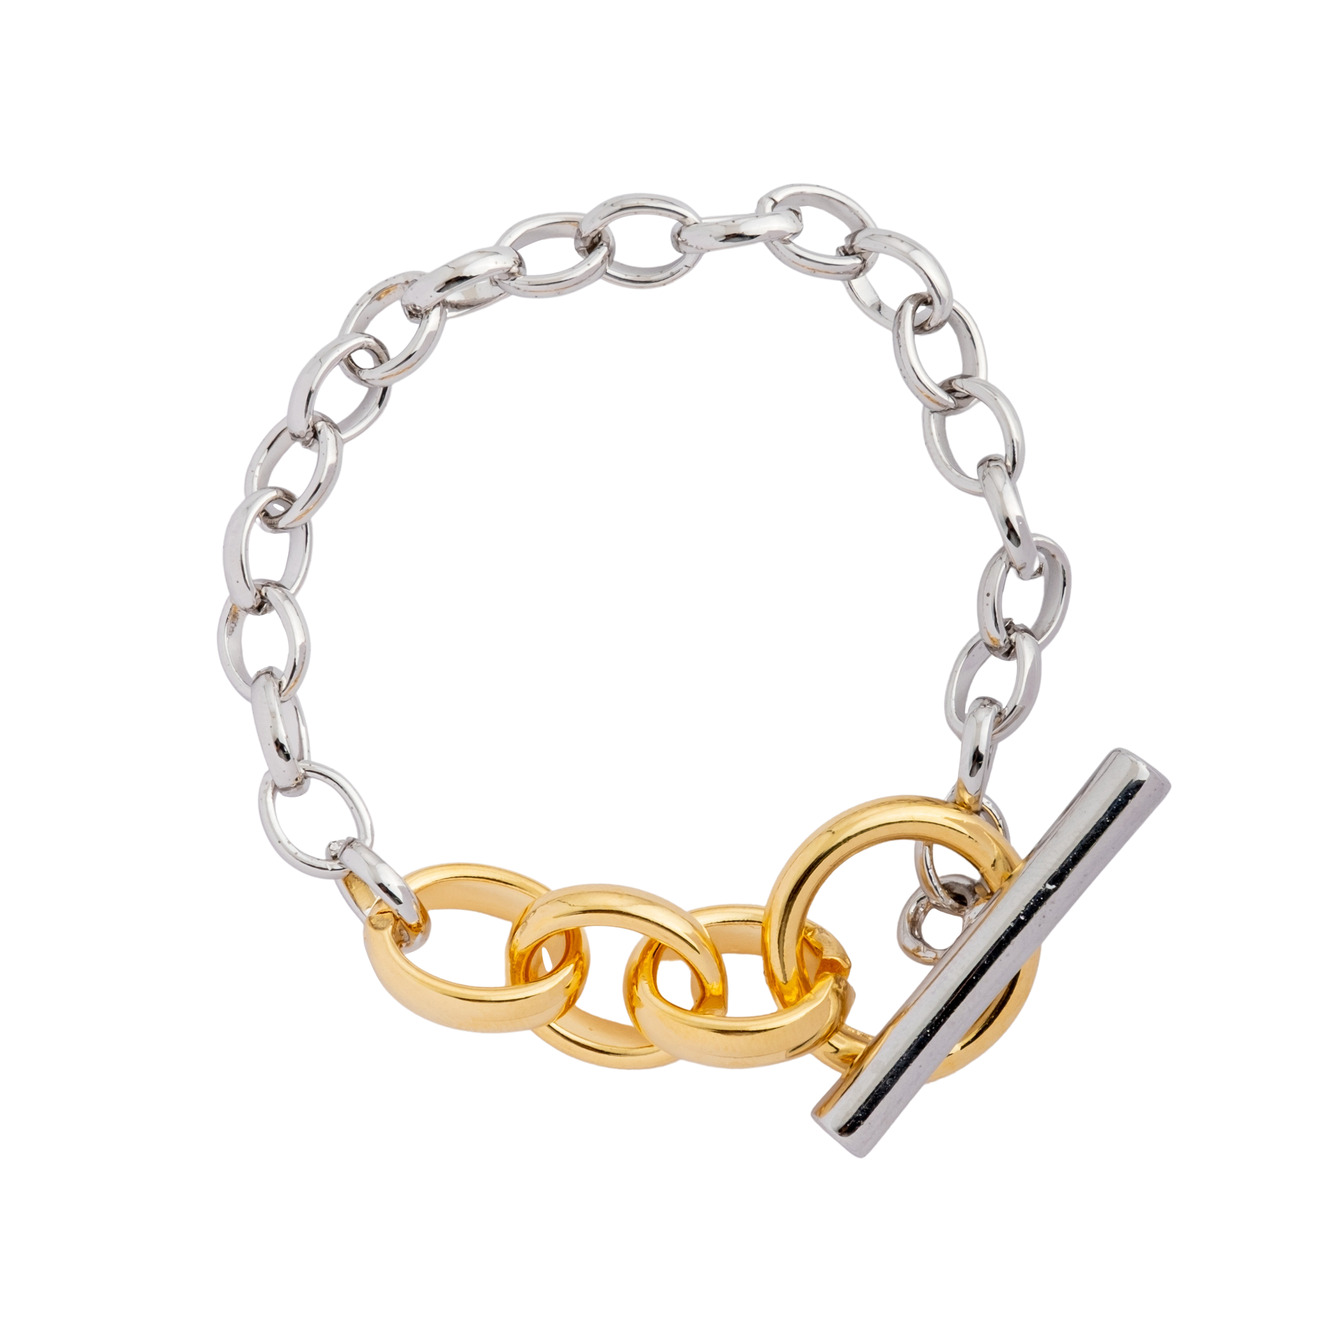 Aqua Серебристый браслет-цепь с золотистым замком aqua серебристый браслет цепь с подвеской сердцем